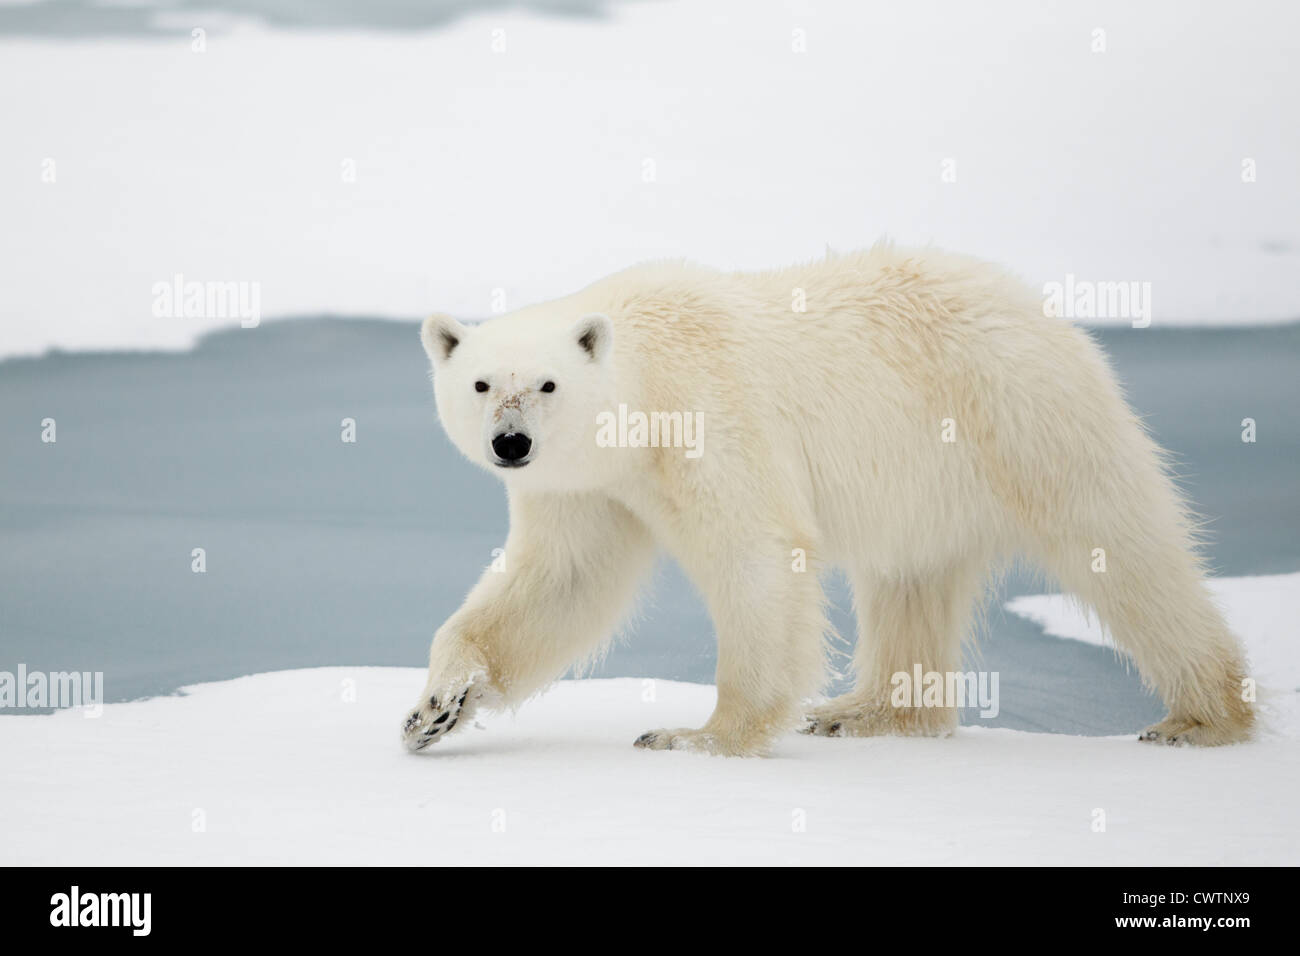 Orso polare (Ursus maritimus) passeggiate, Svalbard island, Norvegia. Foto Stock